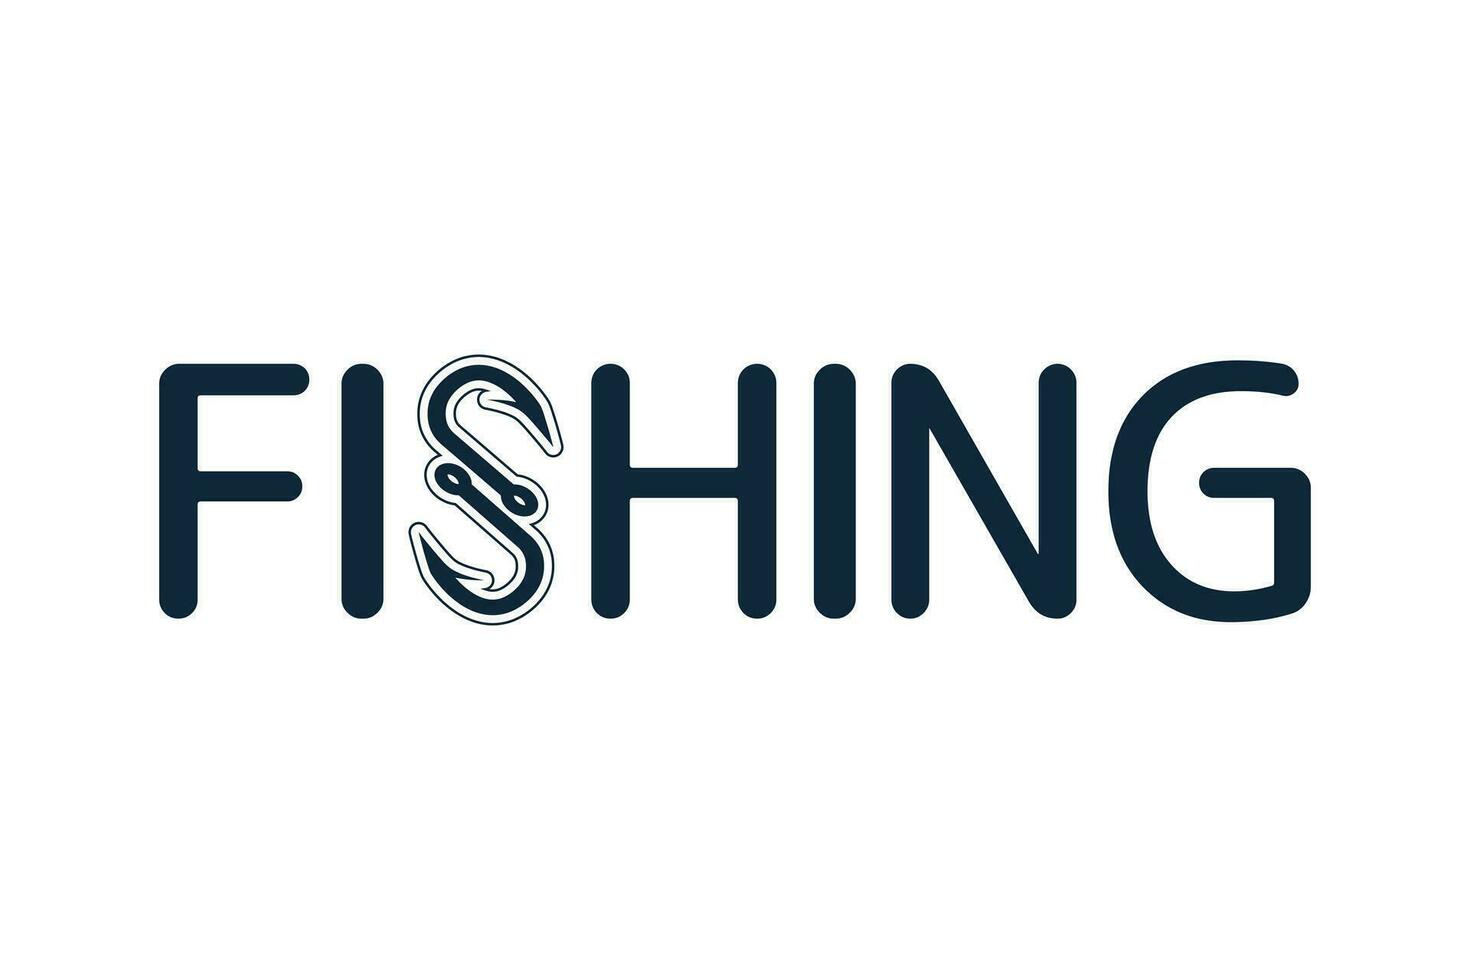 pesca logo disegni per il tuo marca, professionale pesca logo modelli per il tuo attività commerciale, elegante pesca tipografia, creativo pesca disegno, pesca logo, pesca tipografia vettore